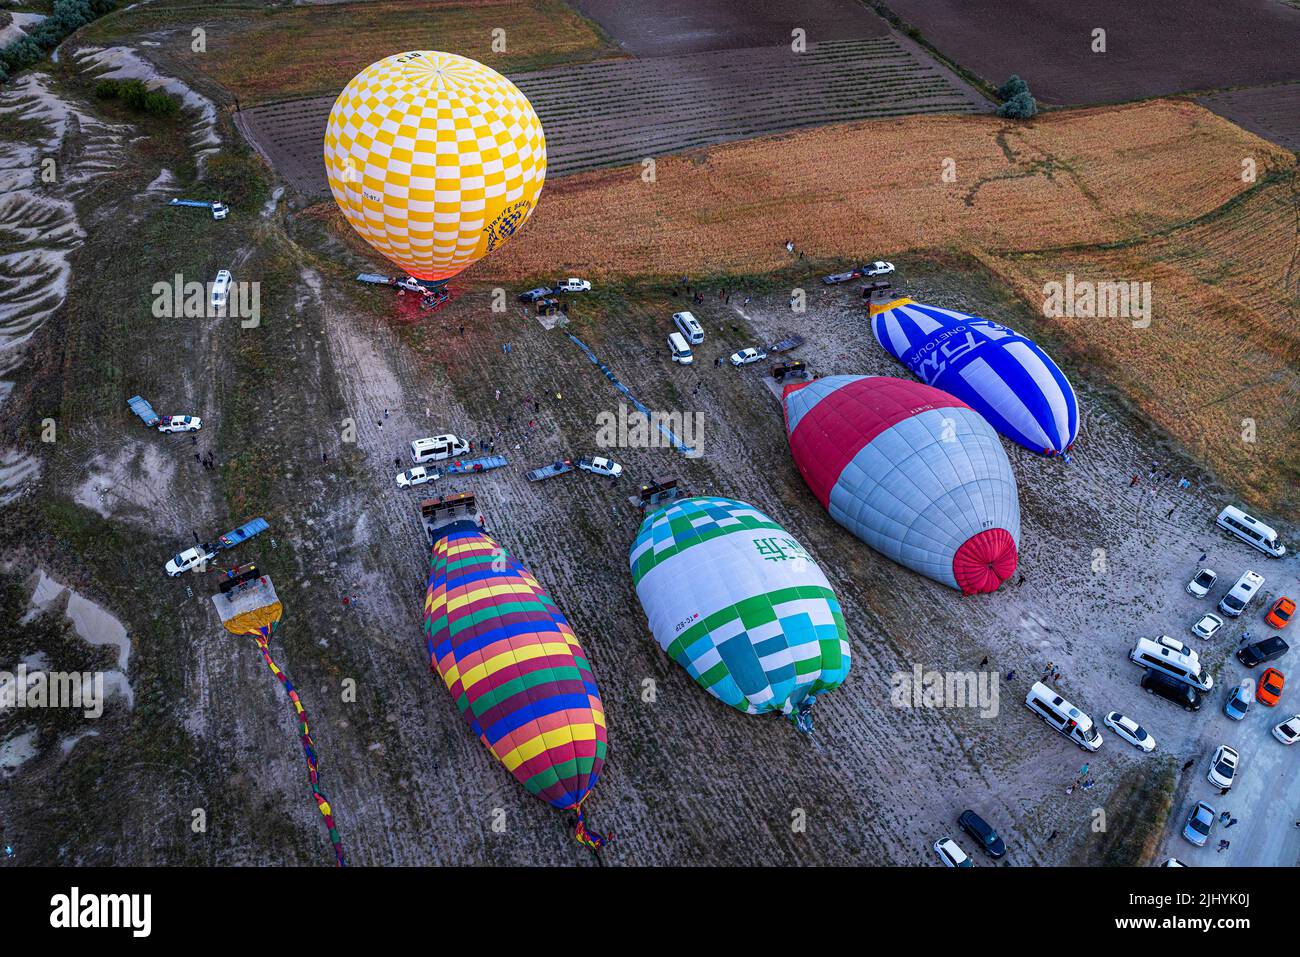 GOREME/TURQUÍA - 26 de junio de 2022: Los globos de aire caliente se desinflan después del vuelo turístico. Foto de stock